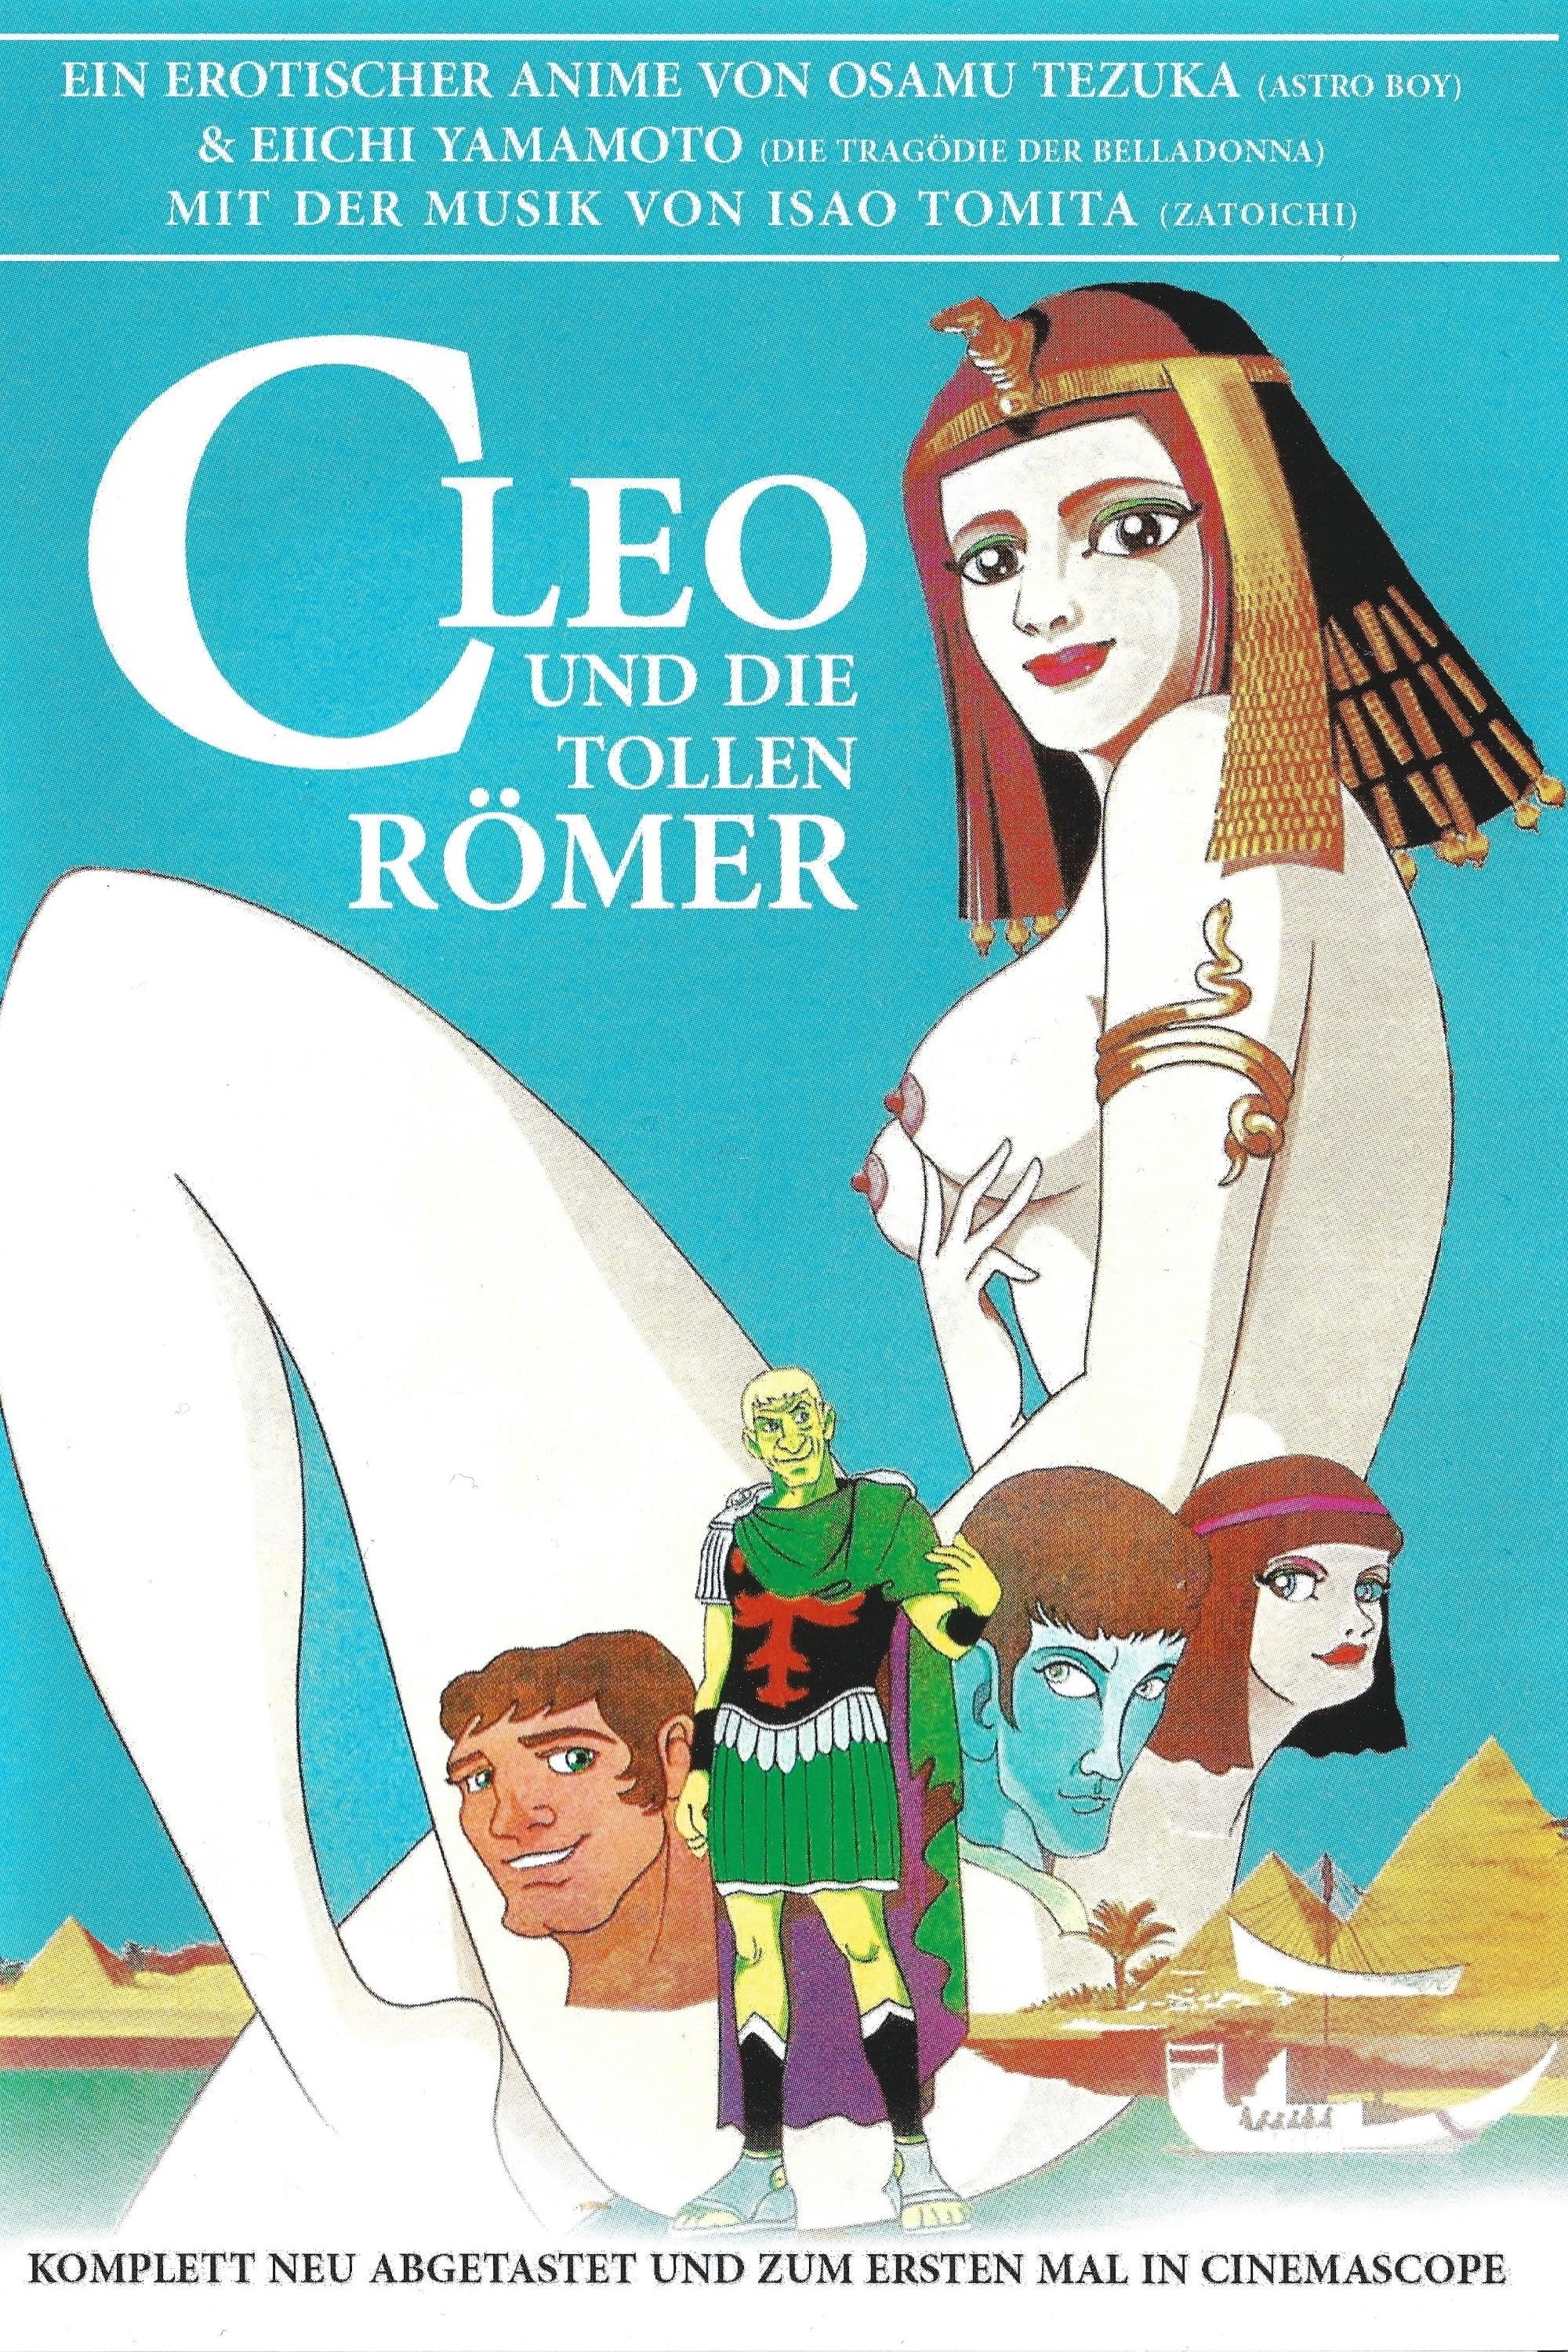 Cleo und die tollen Römer poster